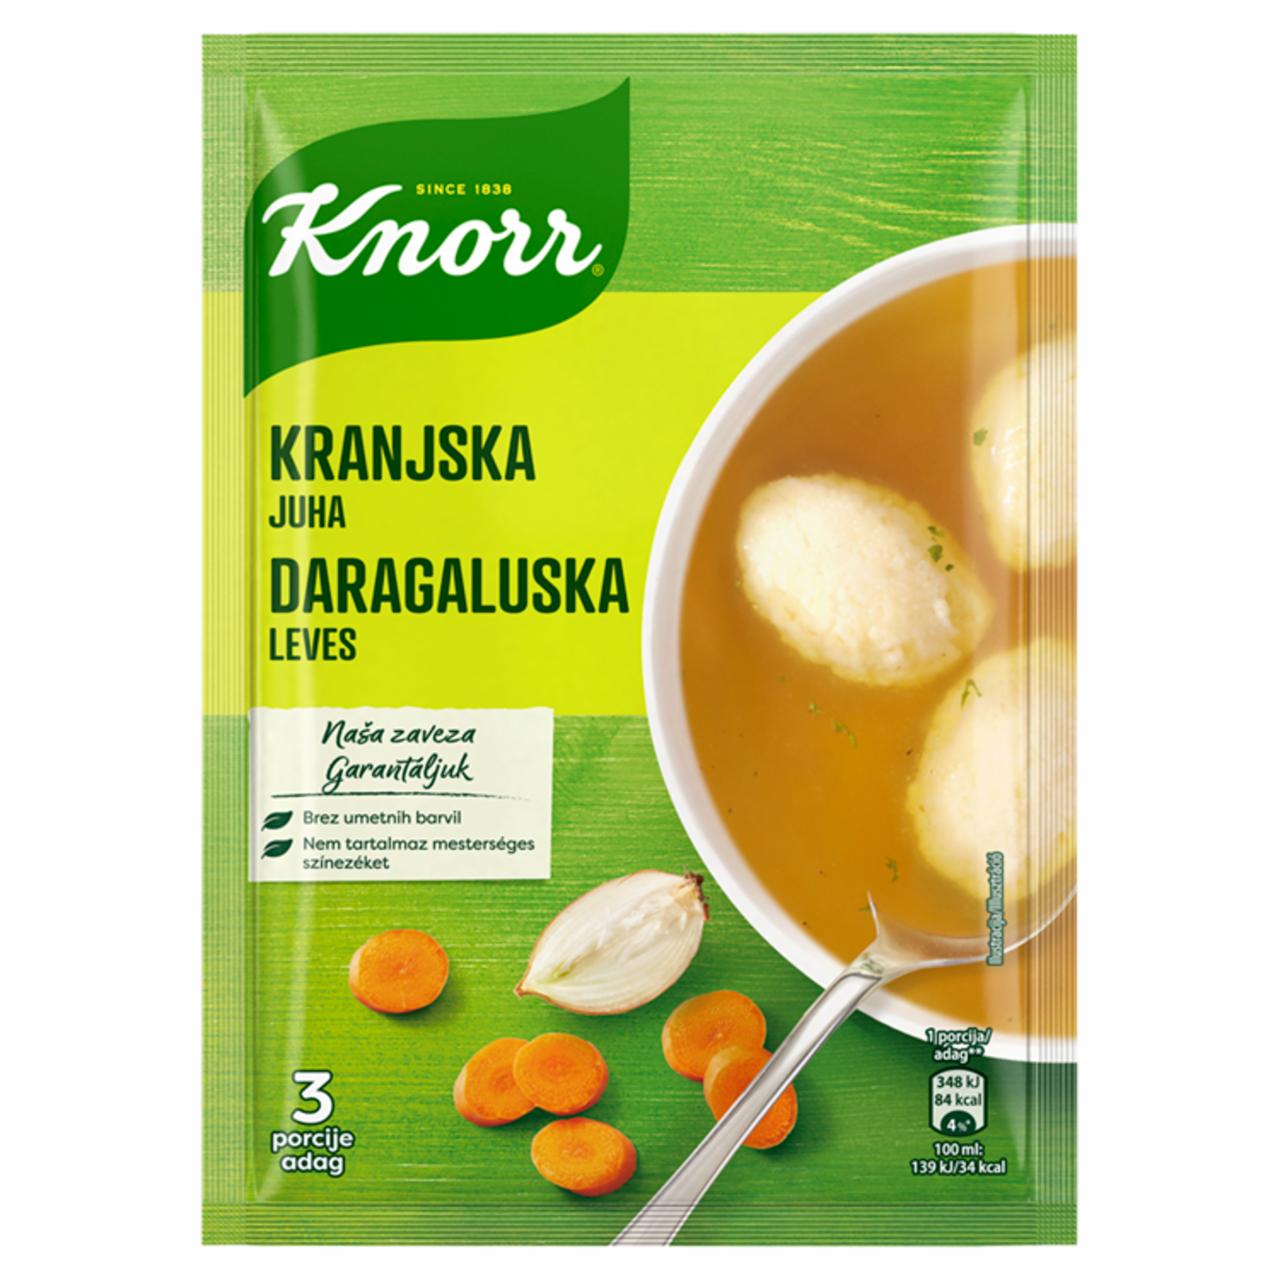 Képek - Knorr daragaluska leves 62 g